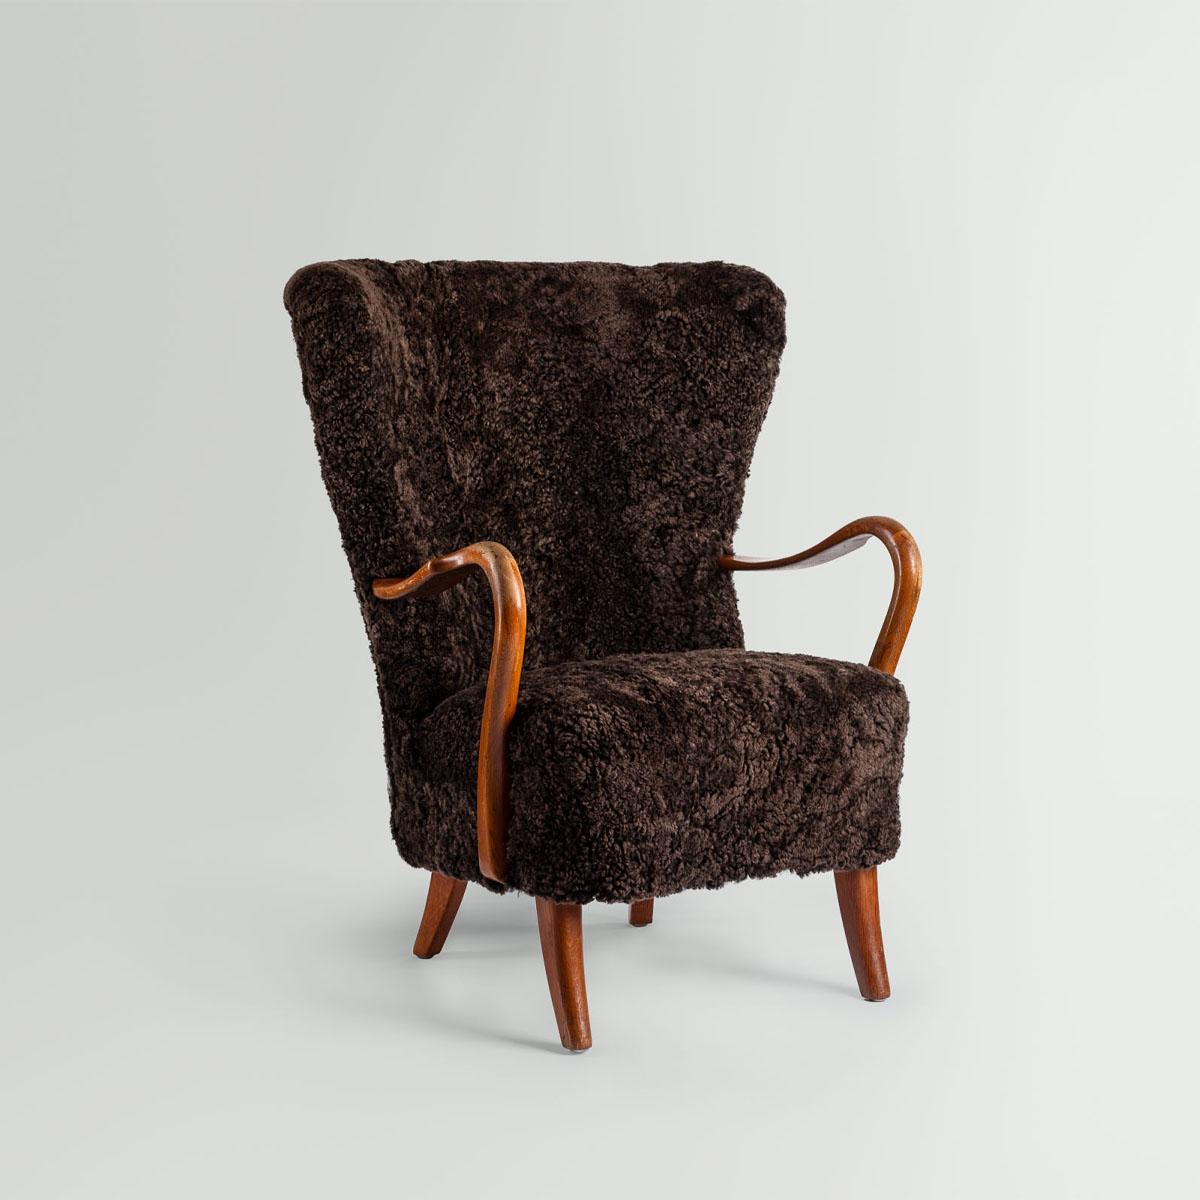 Chaise longue danoise à dossier haut en peau de mouton marron, conçue par le designer danois Alfred Christensen pour Slagelse Møbelfabrik au Danemark, années 1940.

Cette chaise longue rare est un merveilleux exemple du Design Scandinavian Modern